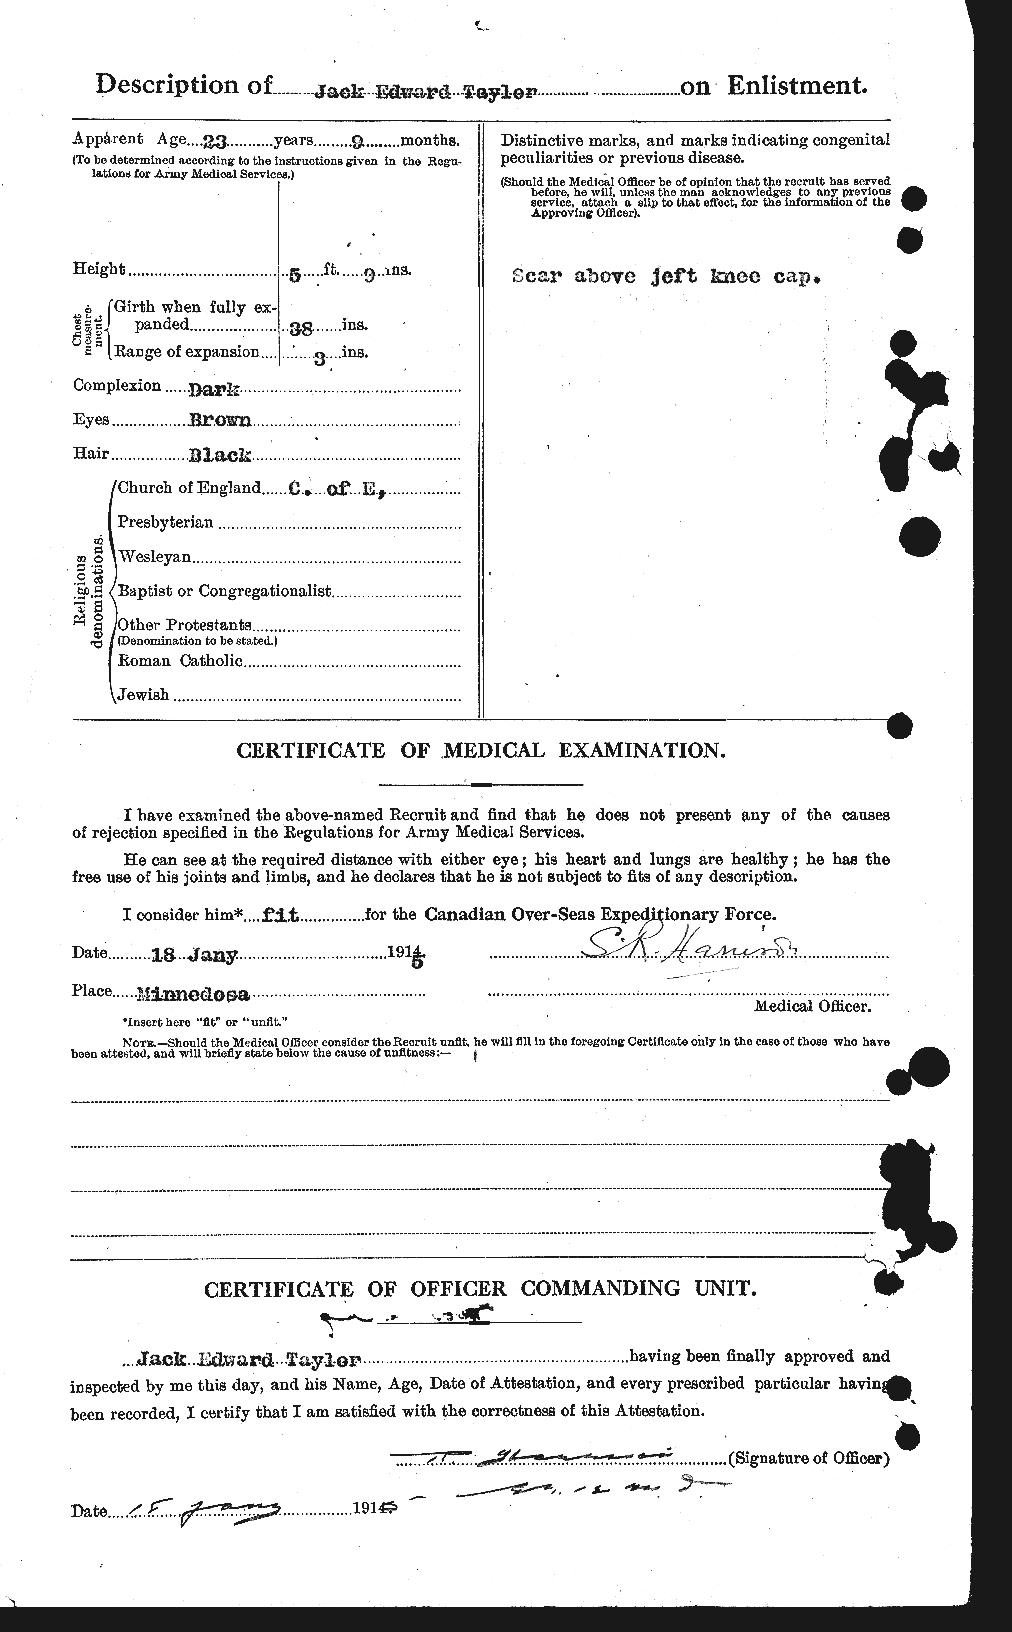 Dossiers du Personnel de la Première Guerre mondiale - CEC 626644b